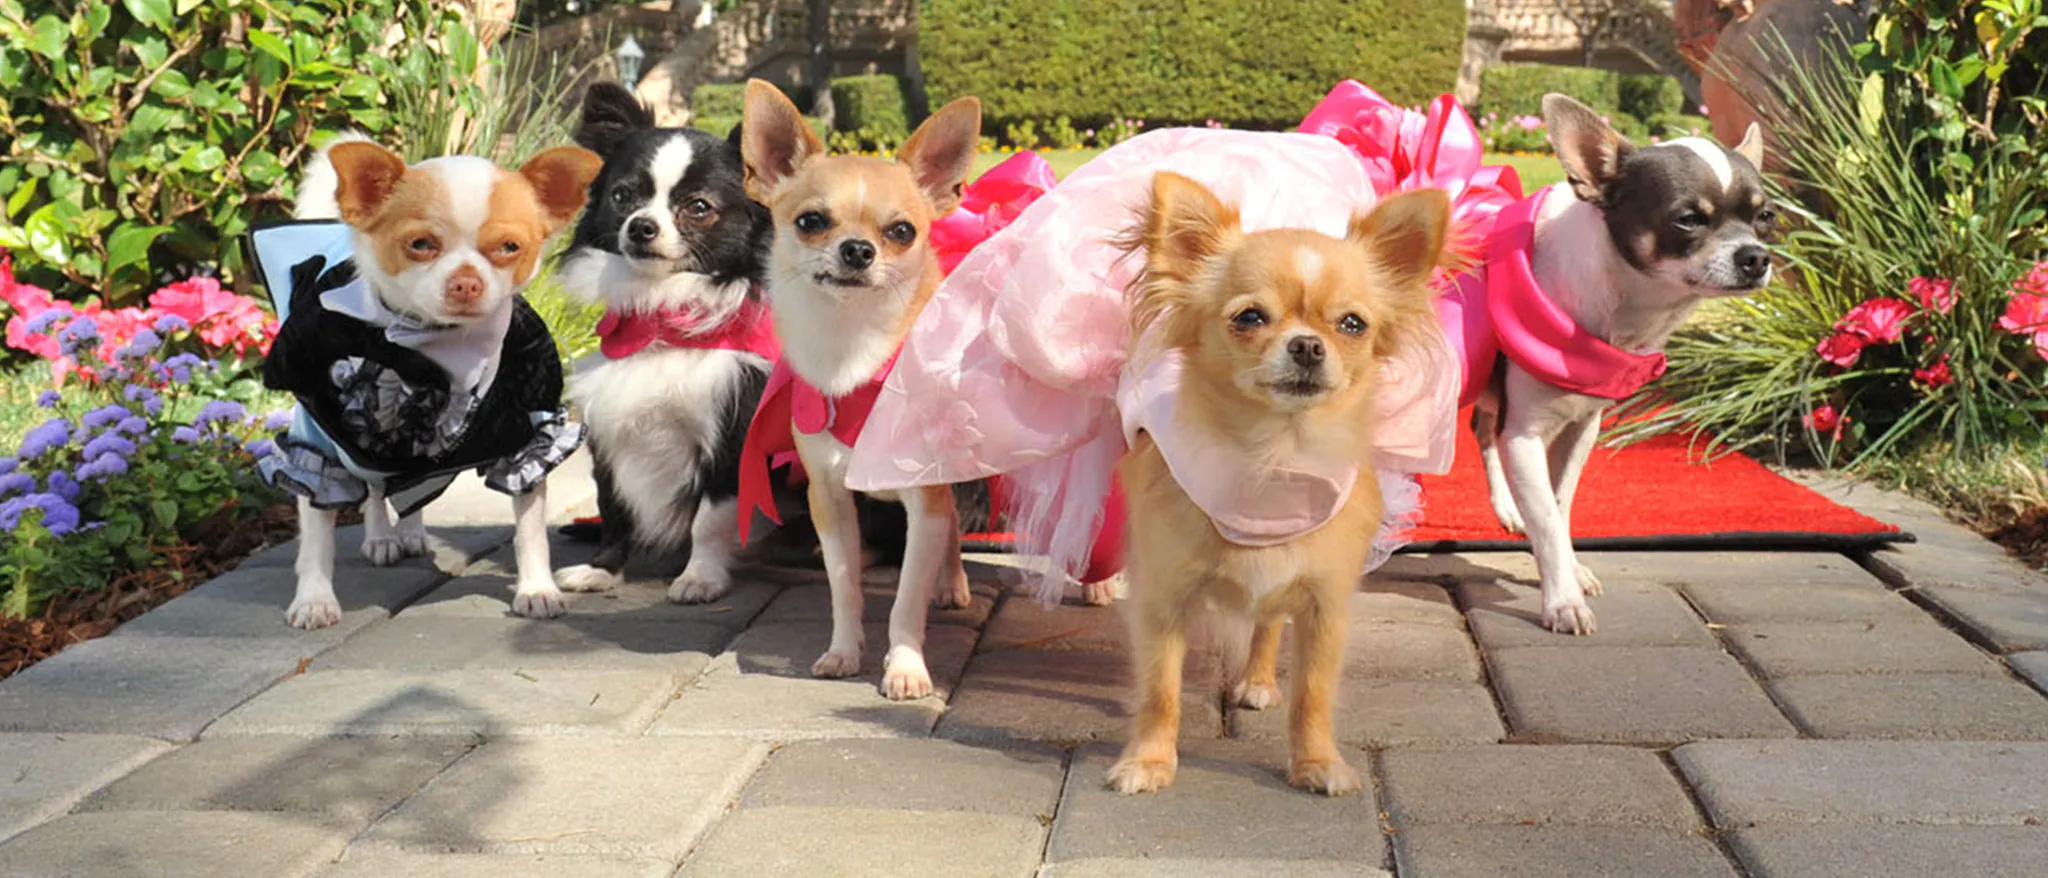 دانلود فیلم Beverly Hills Chihuahua 3: Viva La Fiesta! 2012